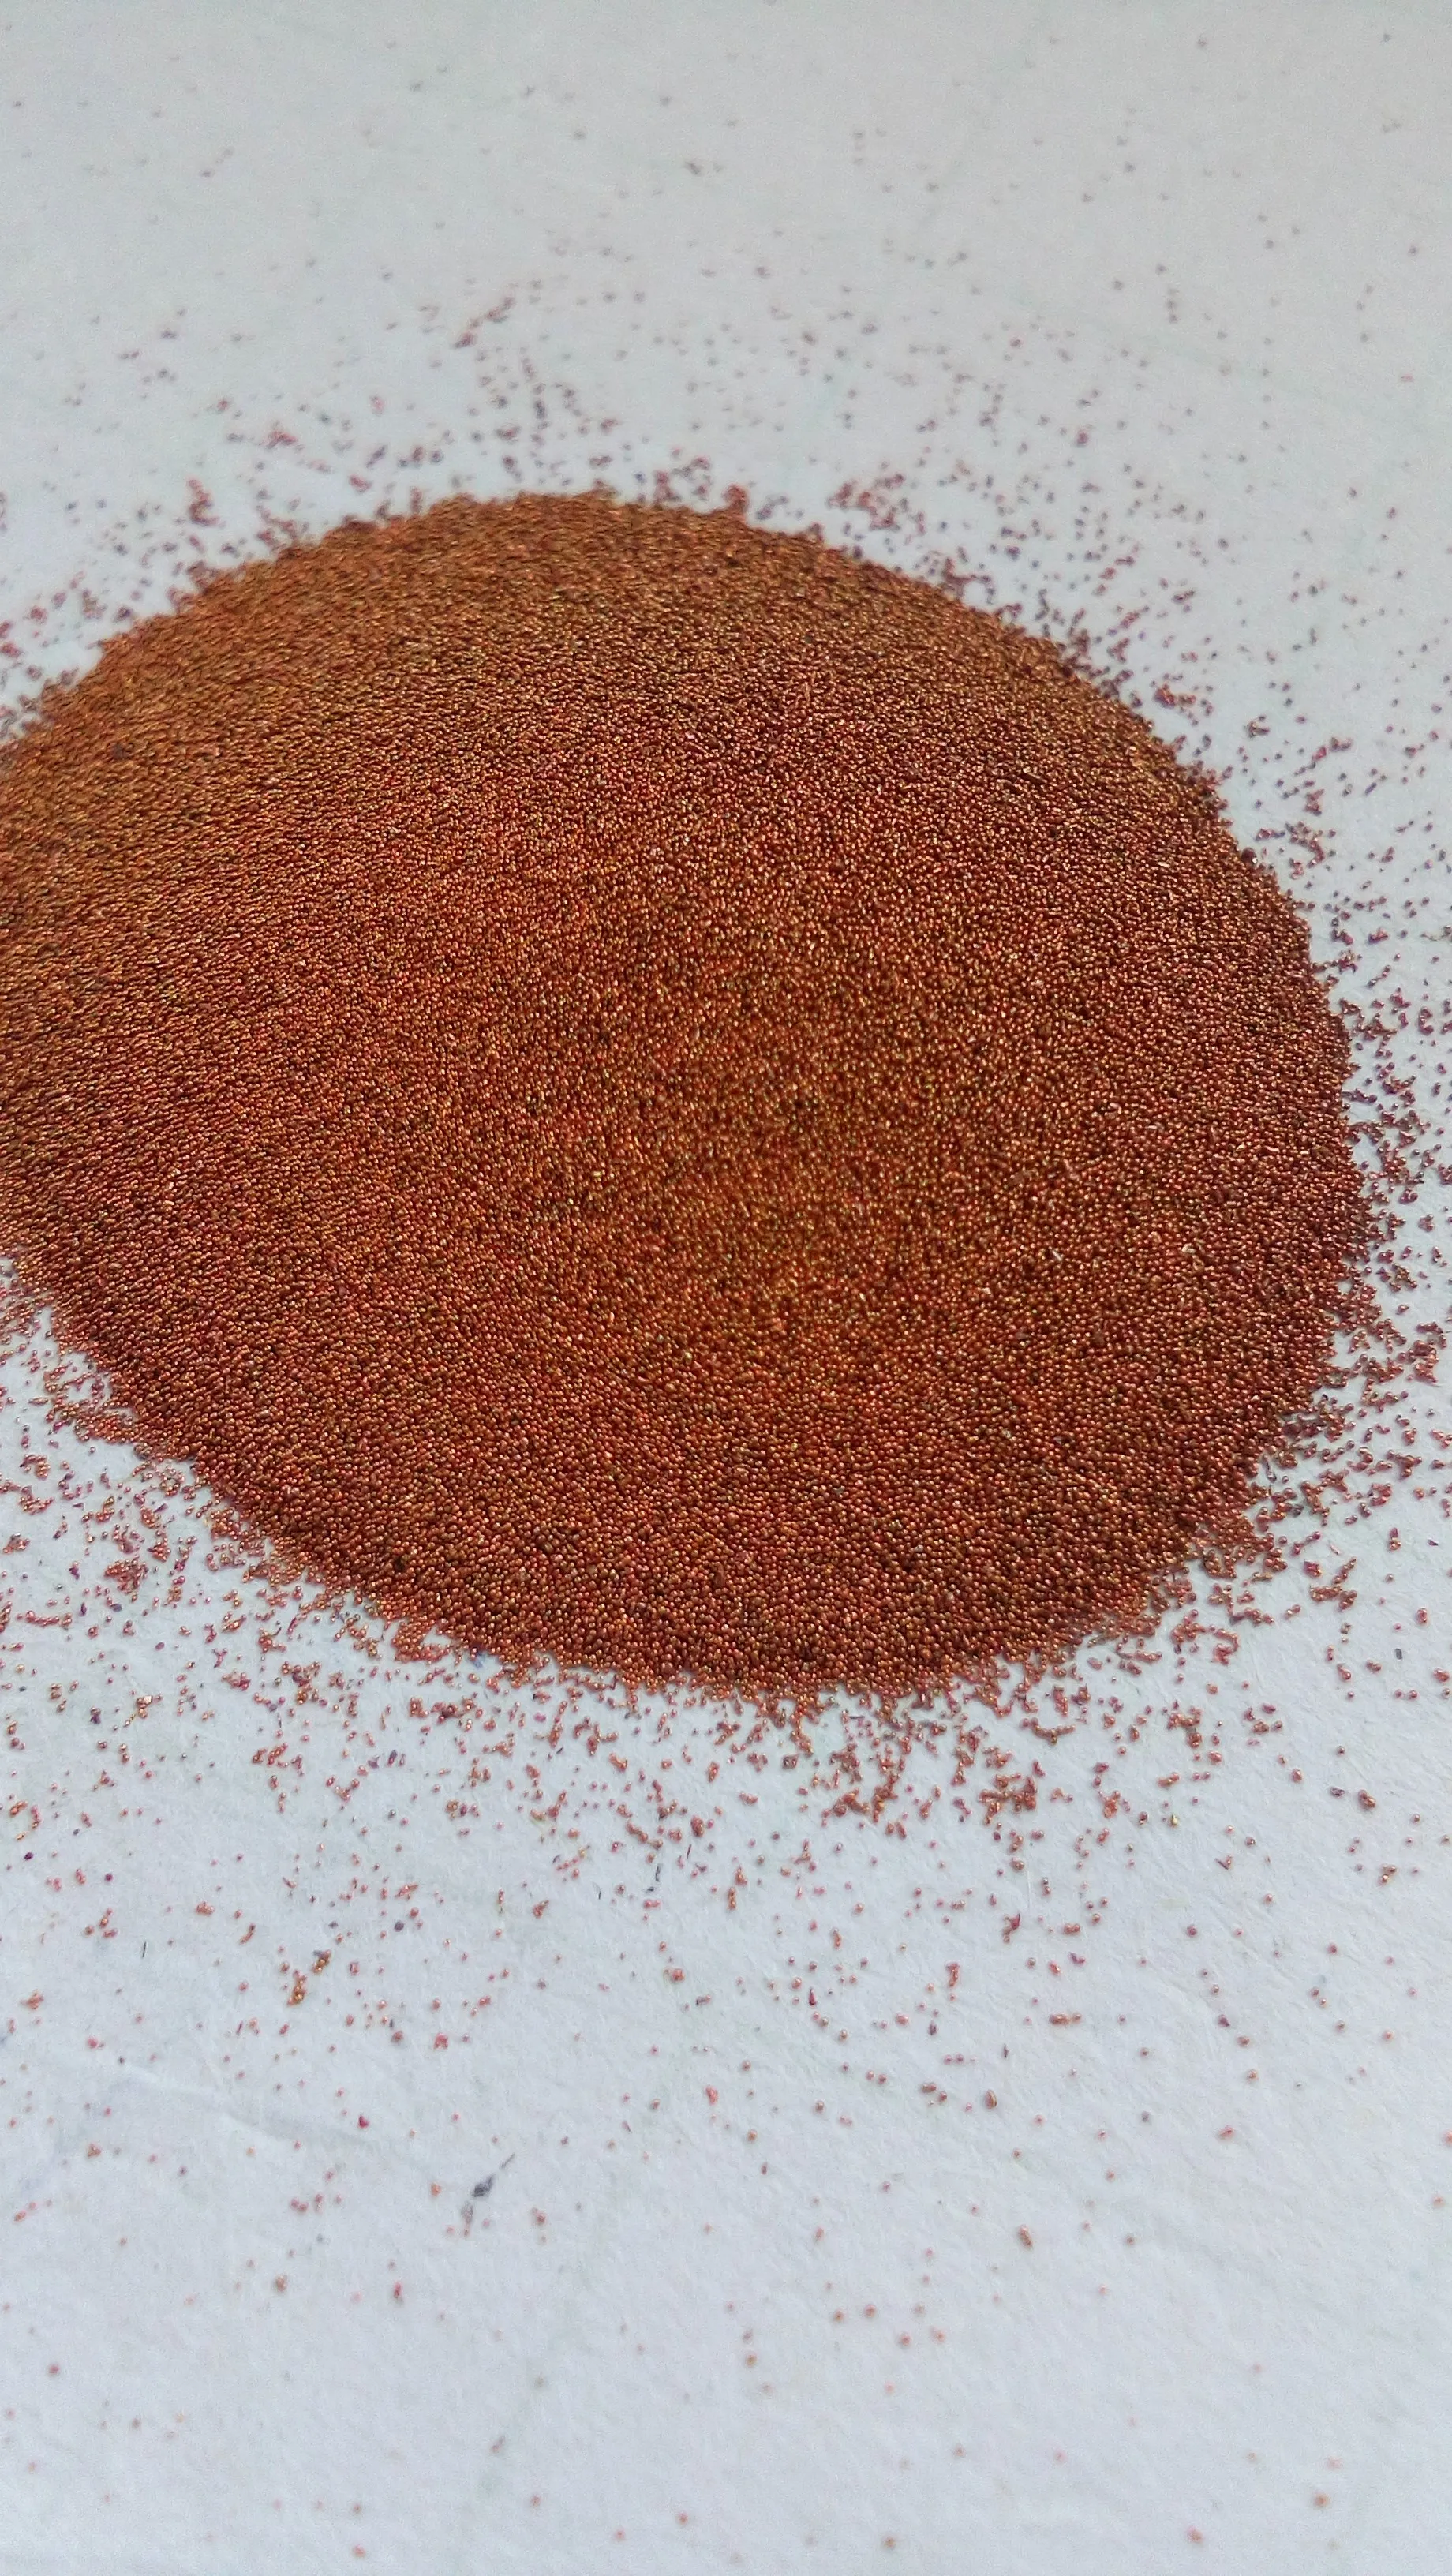 Copper Scrap Powder copper powder